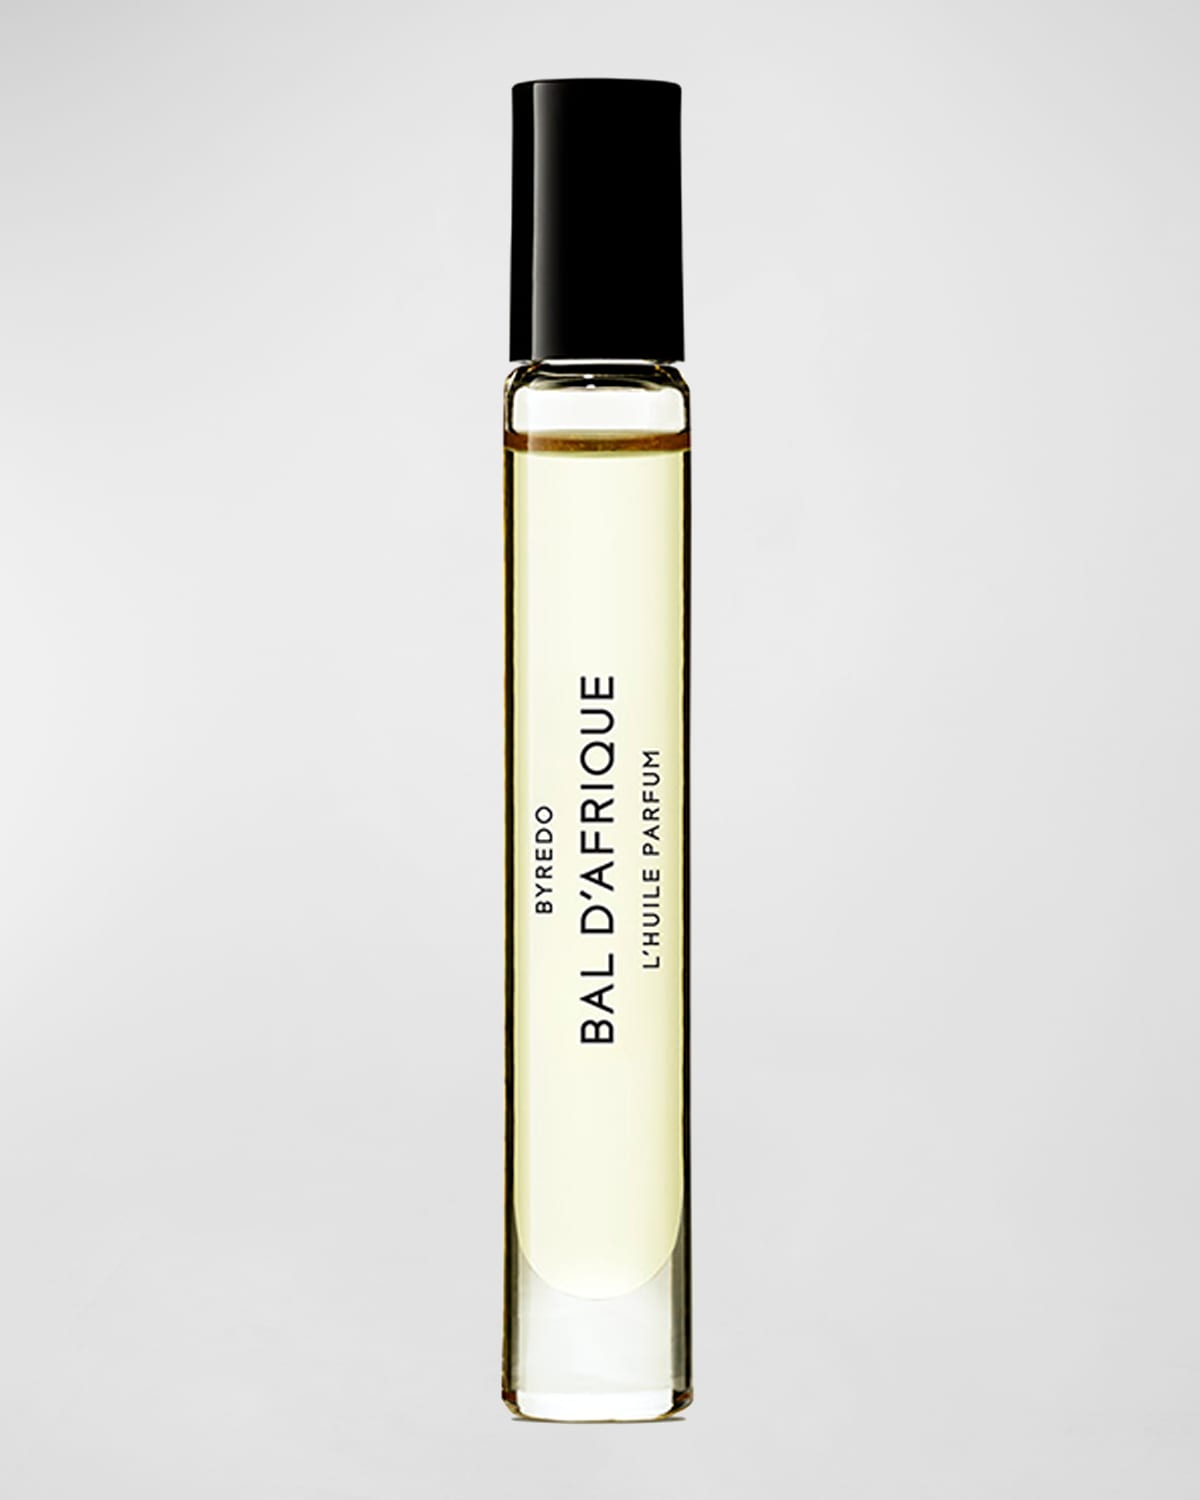 Bal d'Afrique L'Huile Parfum Oil Roll-On, 0.25 oz.